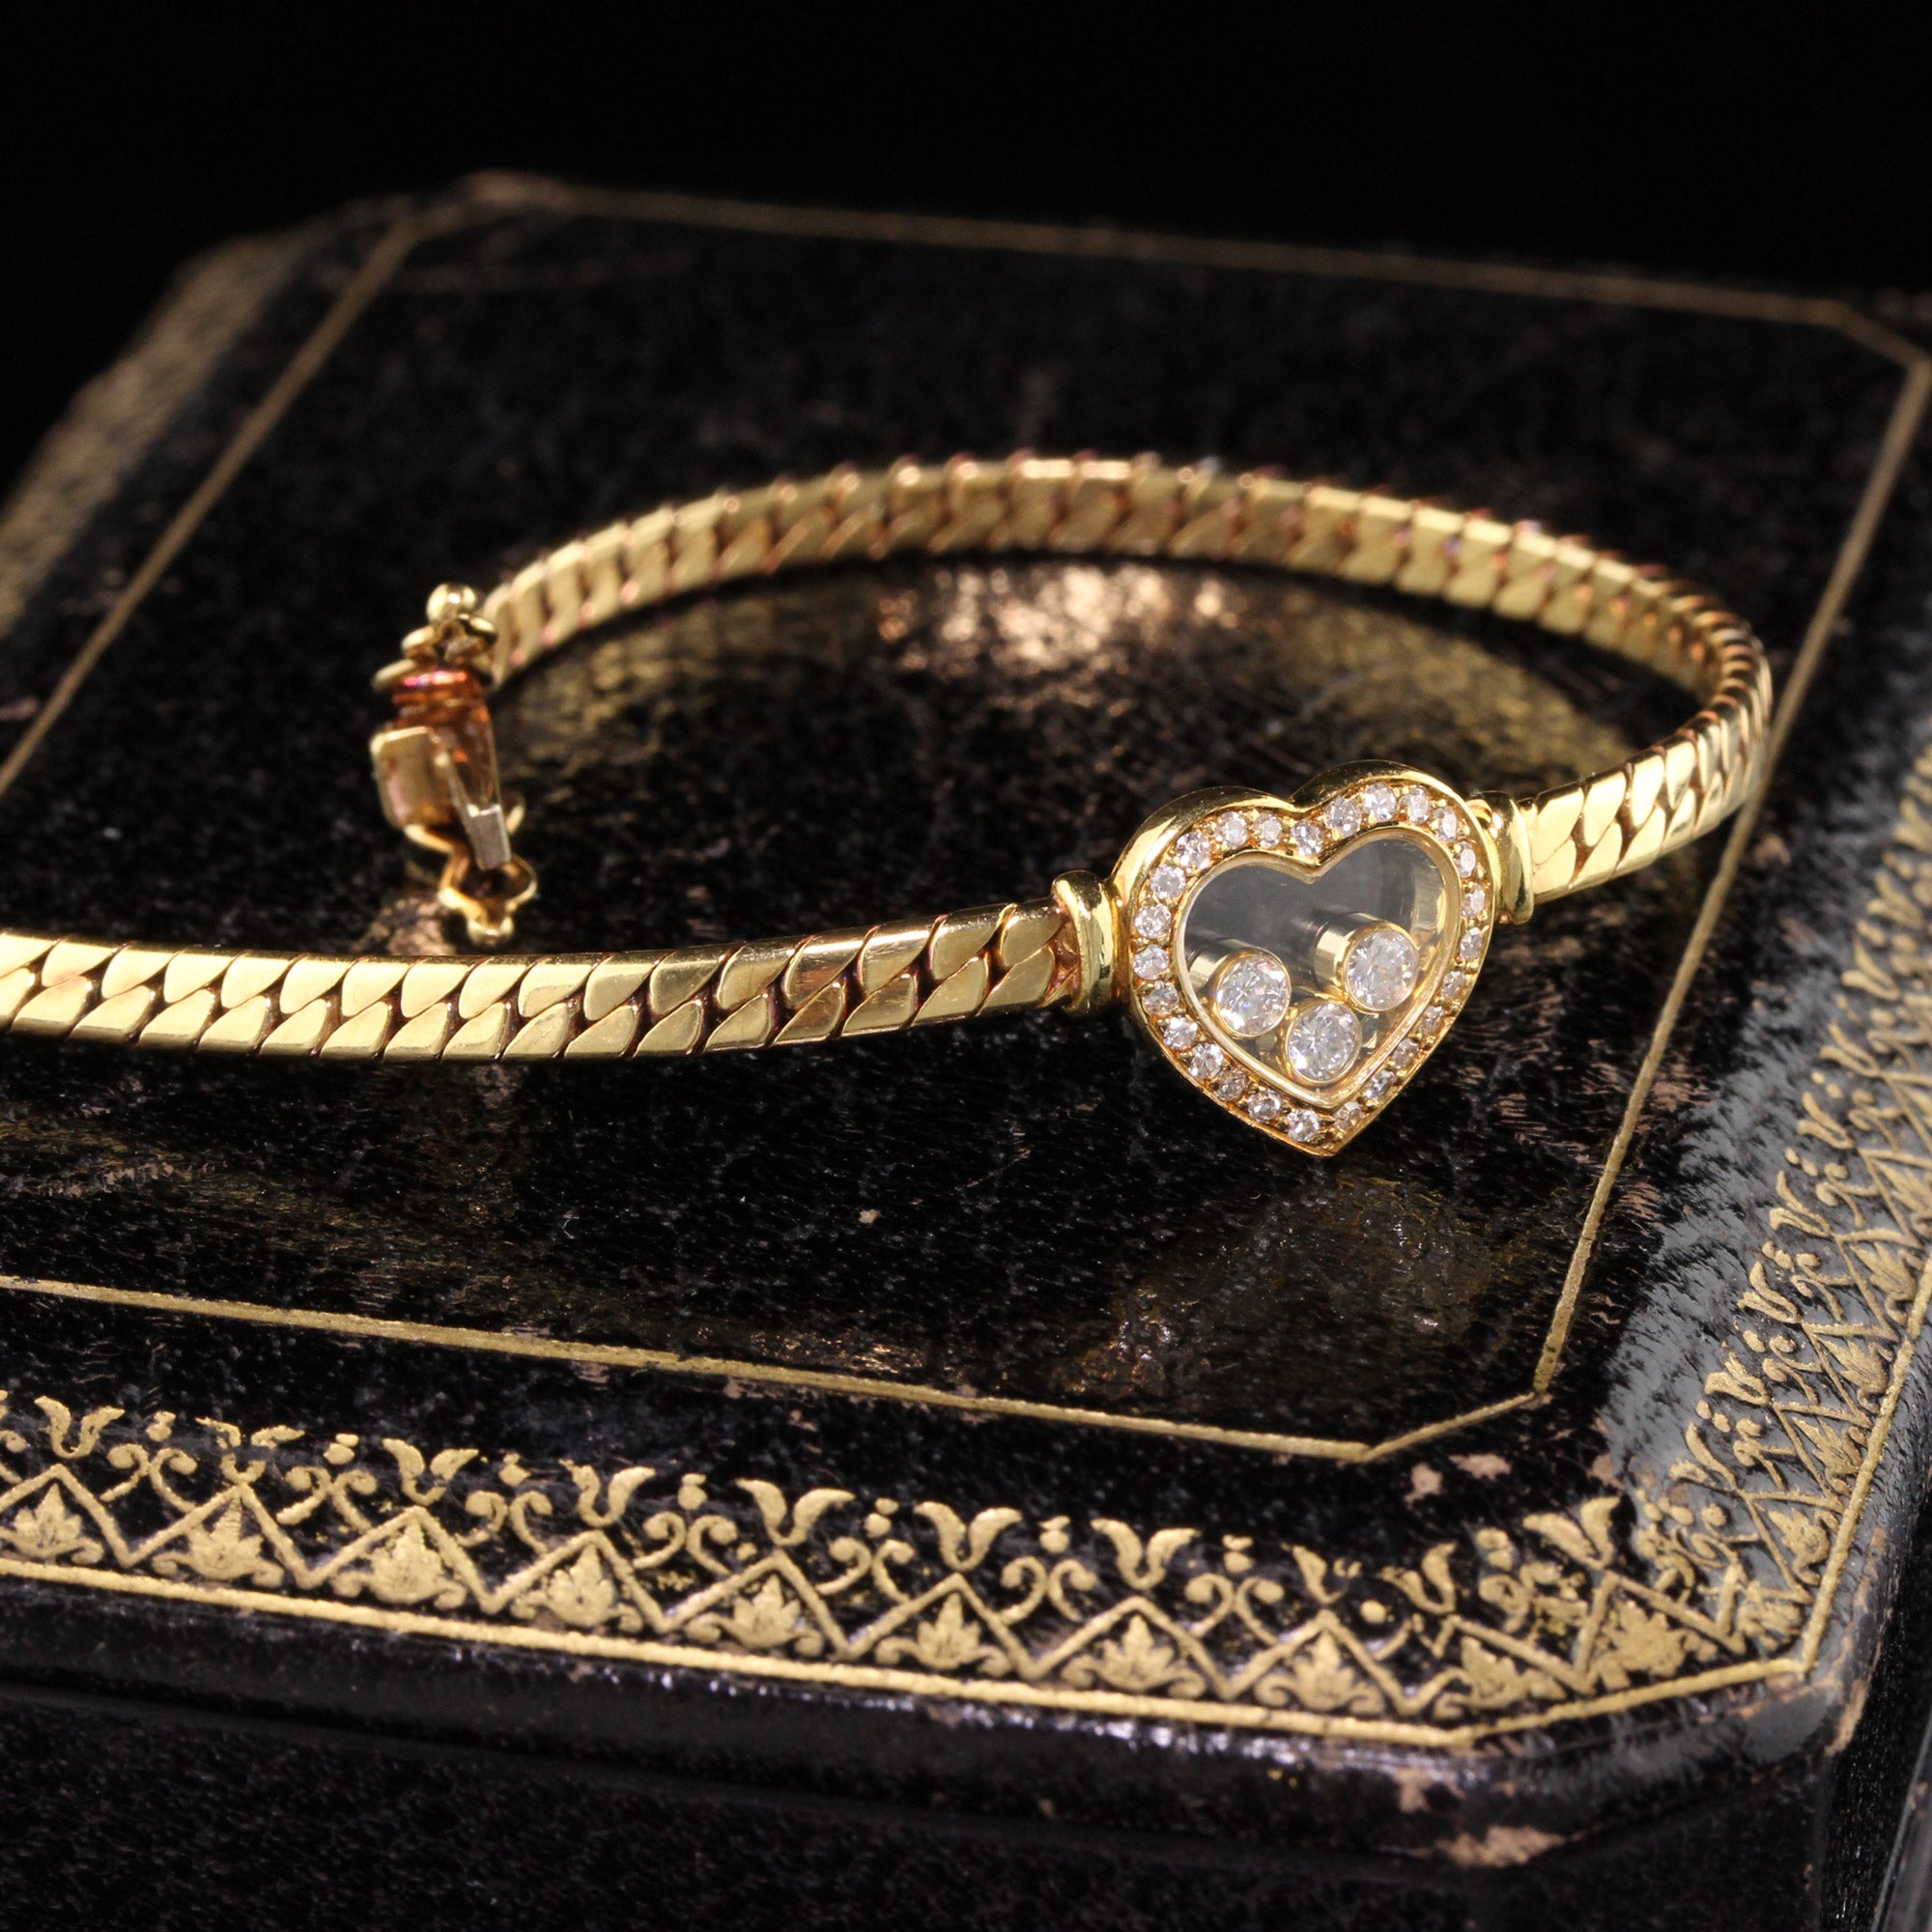 Chopard Happy Butterfly 18K Rose Gold Diamond Bracelet - ShopStyle